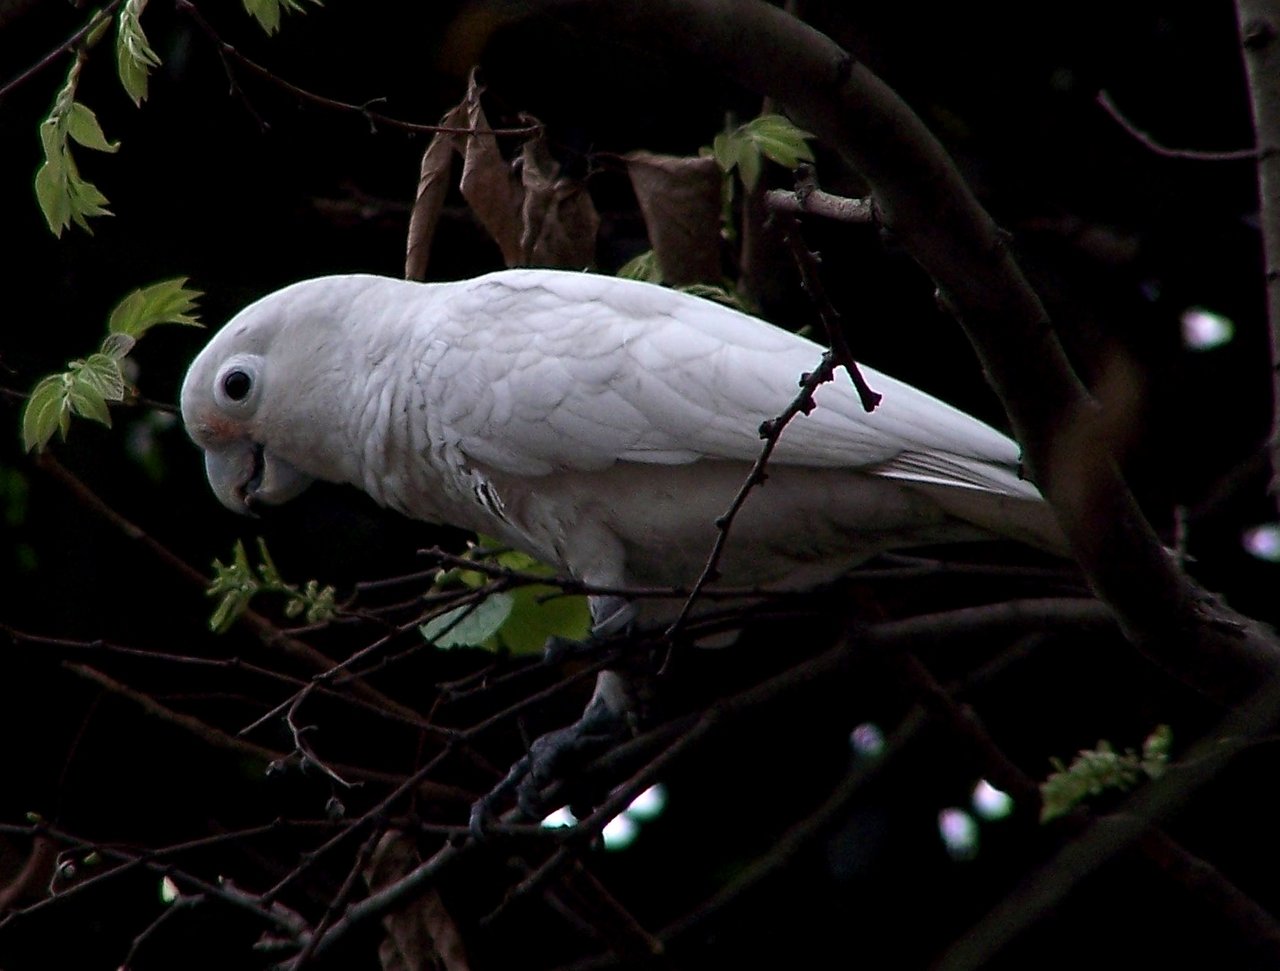 Goffin-Kakadus bauen keine Nester, sondern suchen sich bereits existierende Baumhöhlen zum Brüten. (Bild Wikimedia)